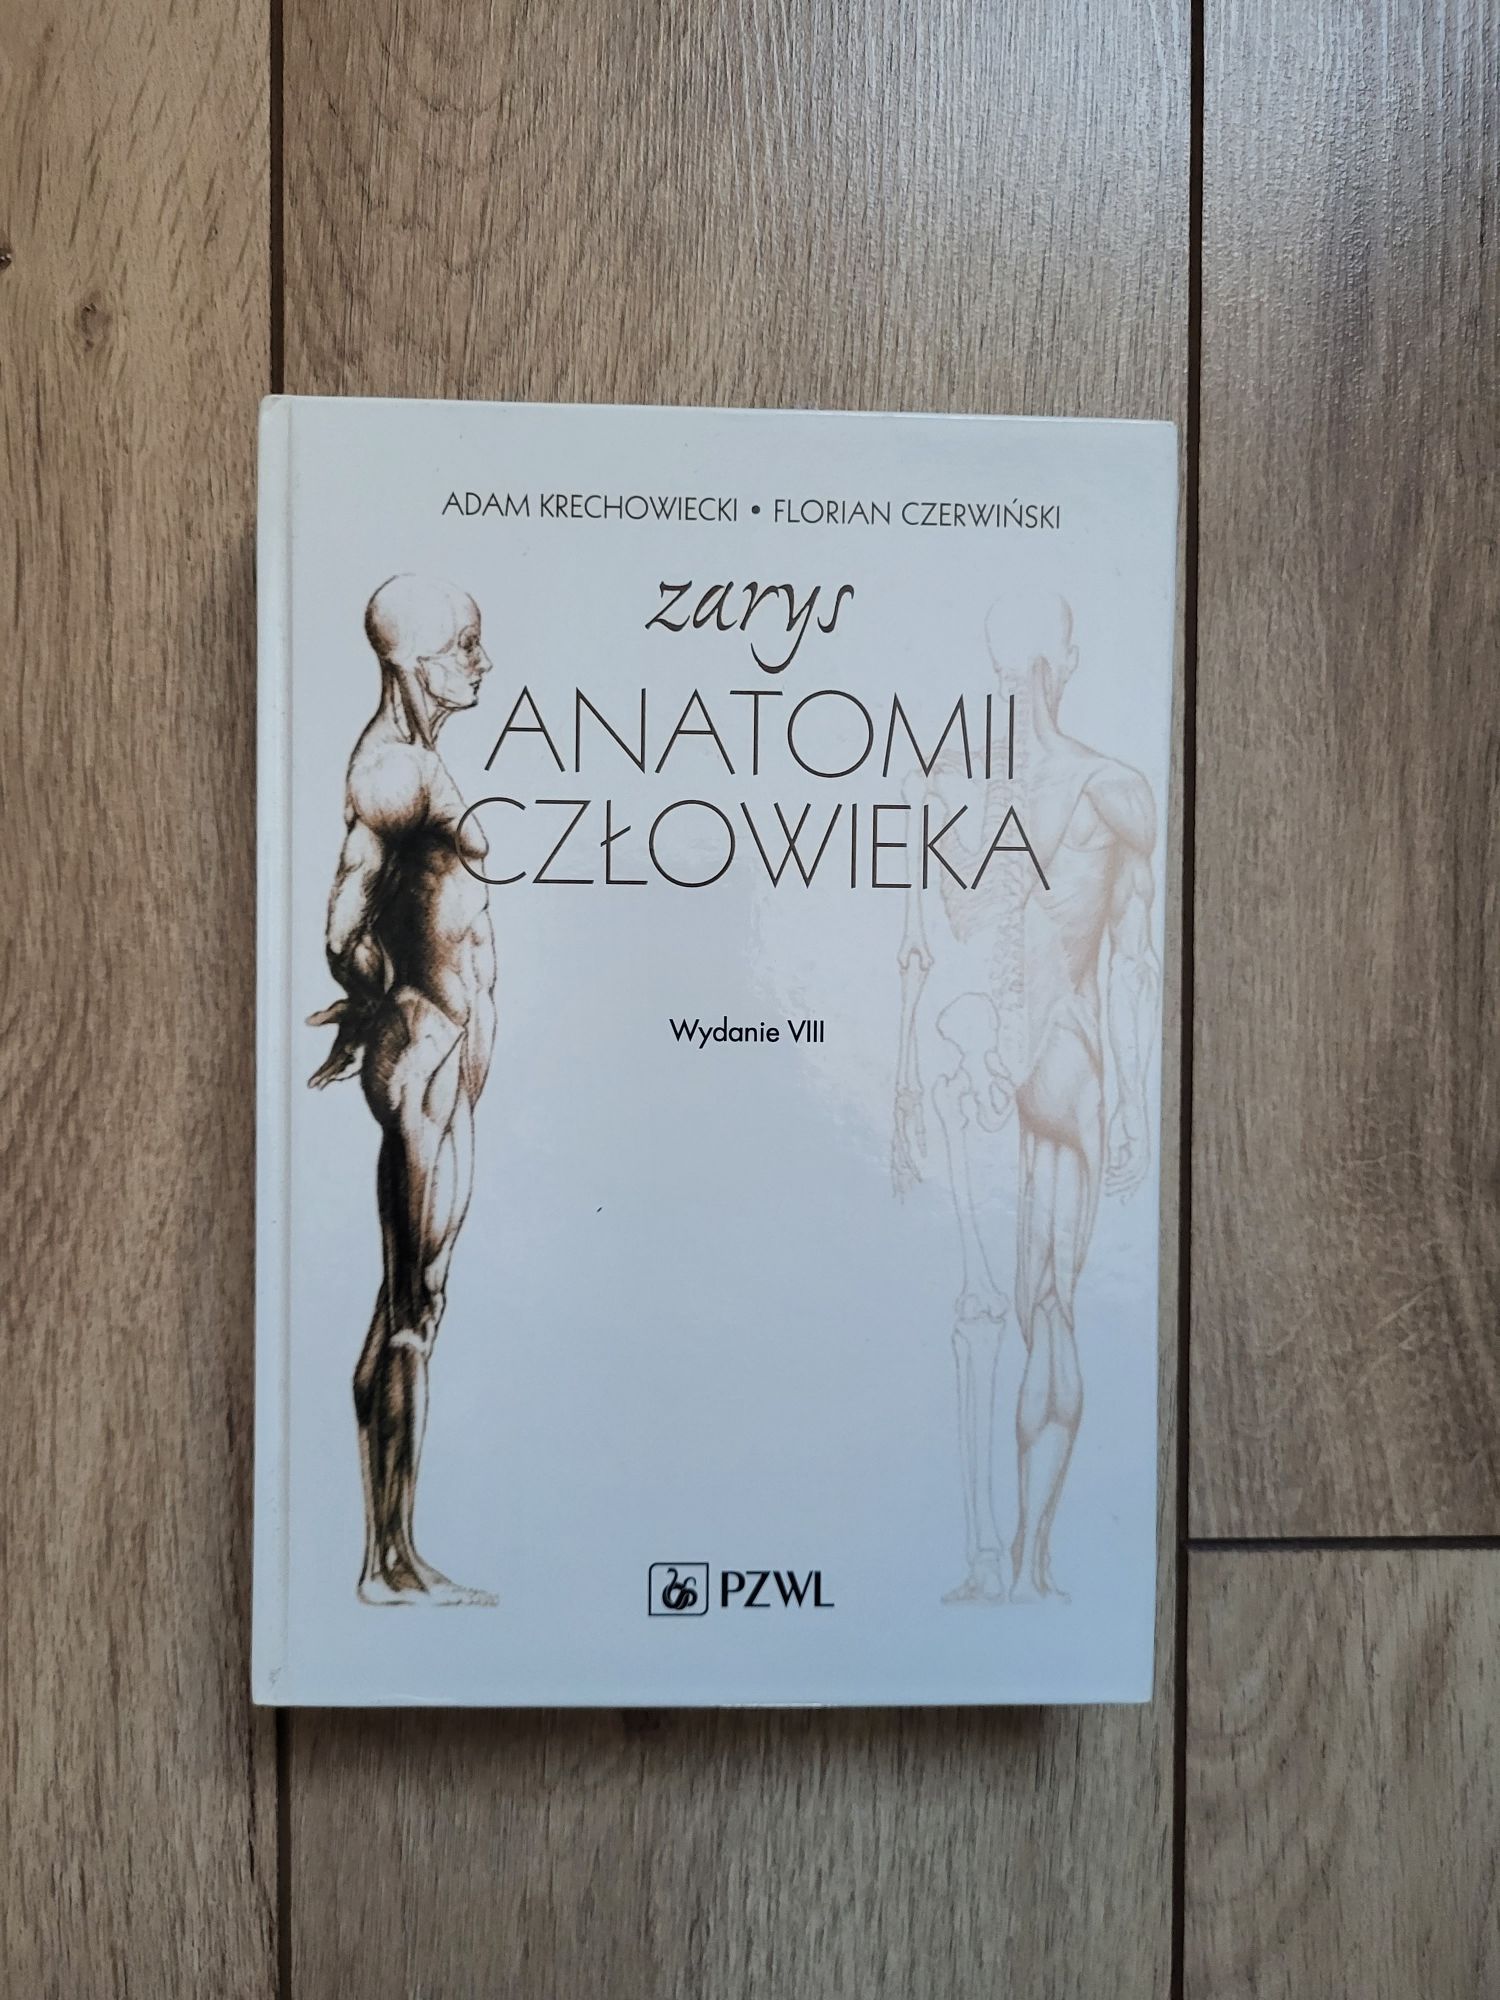 Książka zarys anatomii człowieka. Adam krechowiecki, Florian czerwińsk